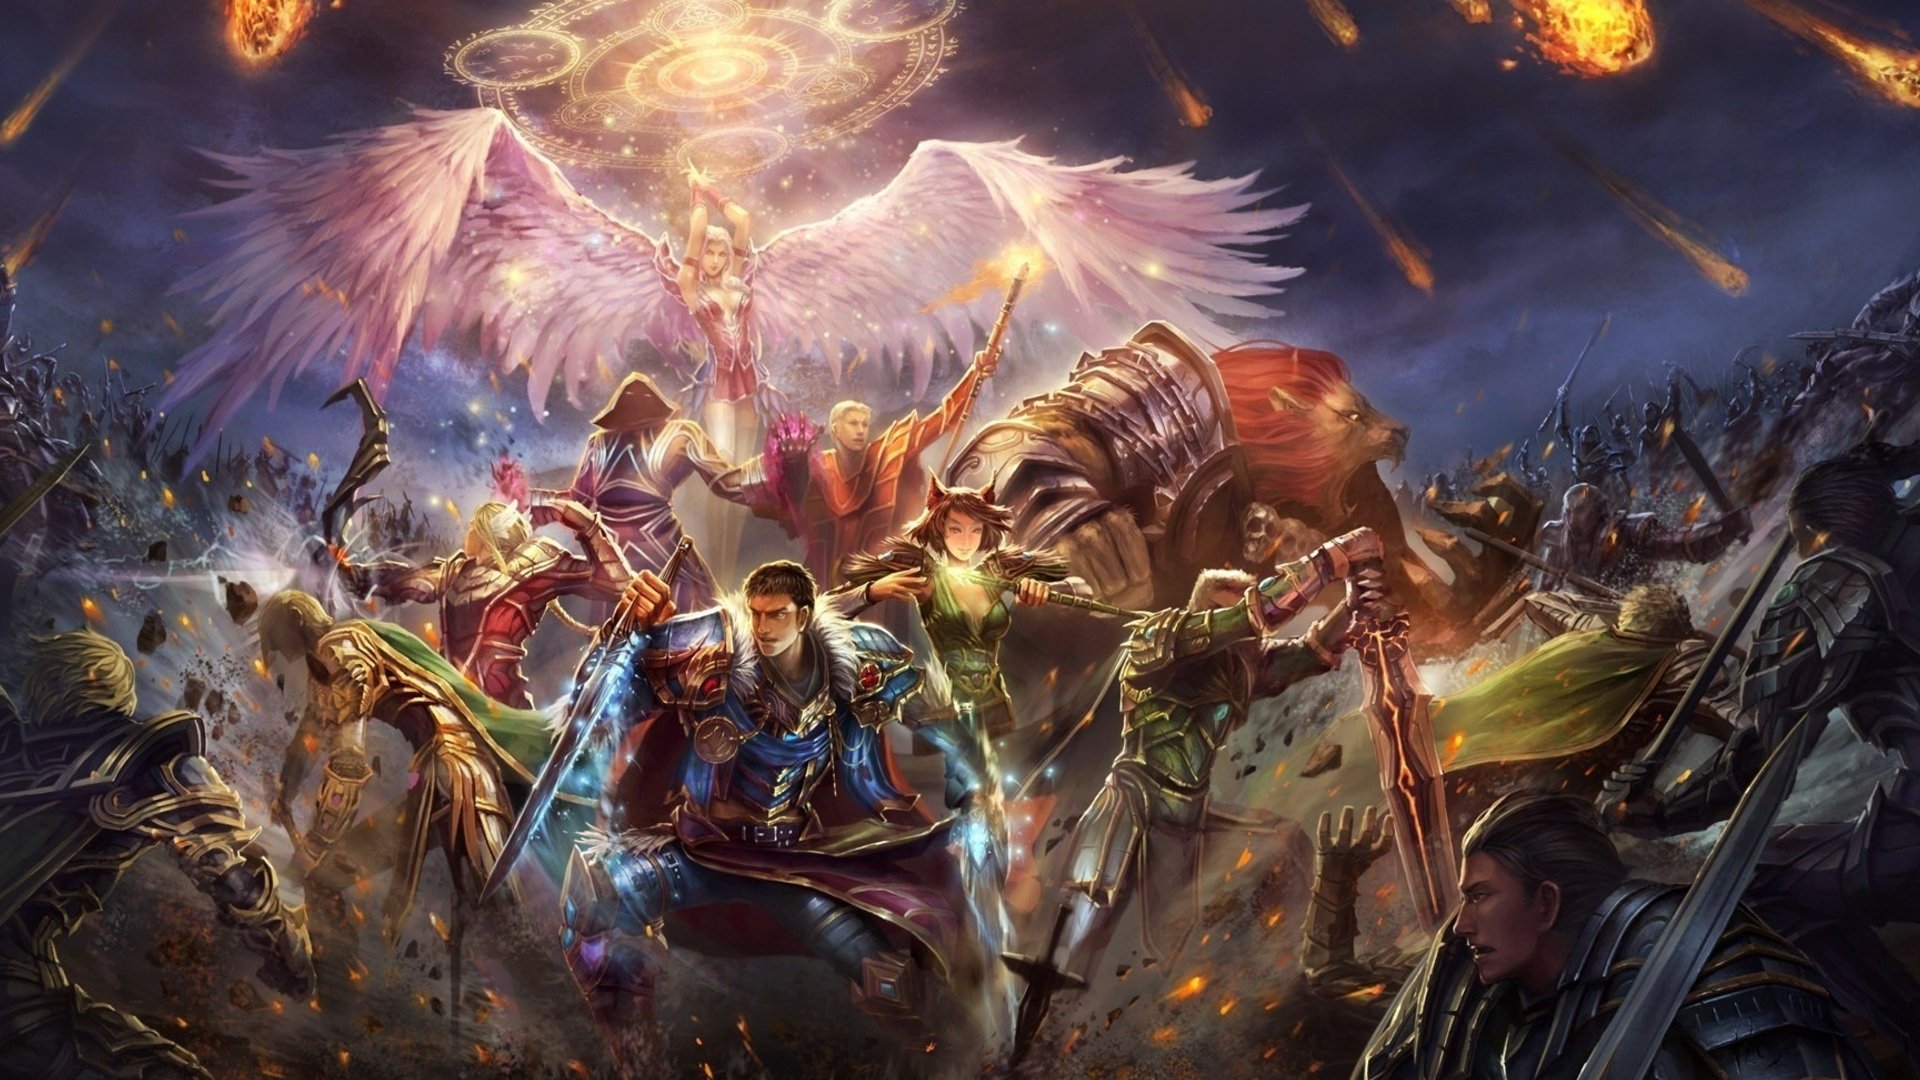 fondo de pantalla de batalla épica,cg artwork,demonio,mitología,juego de acción y aventura,personaje de ficción